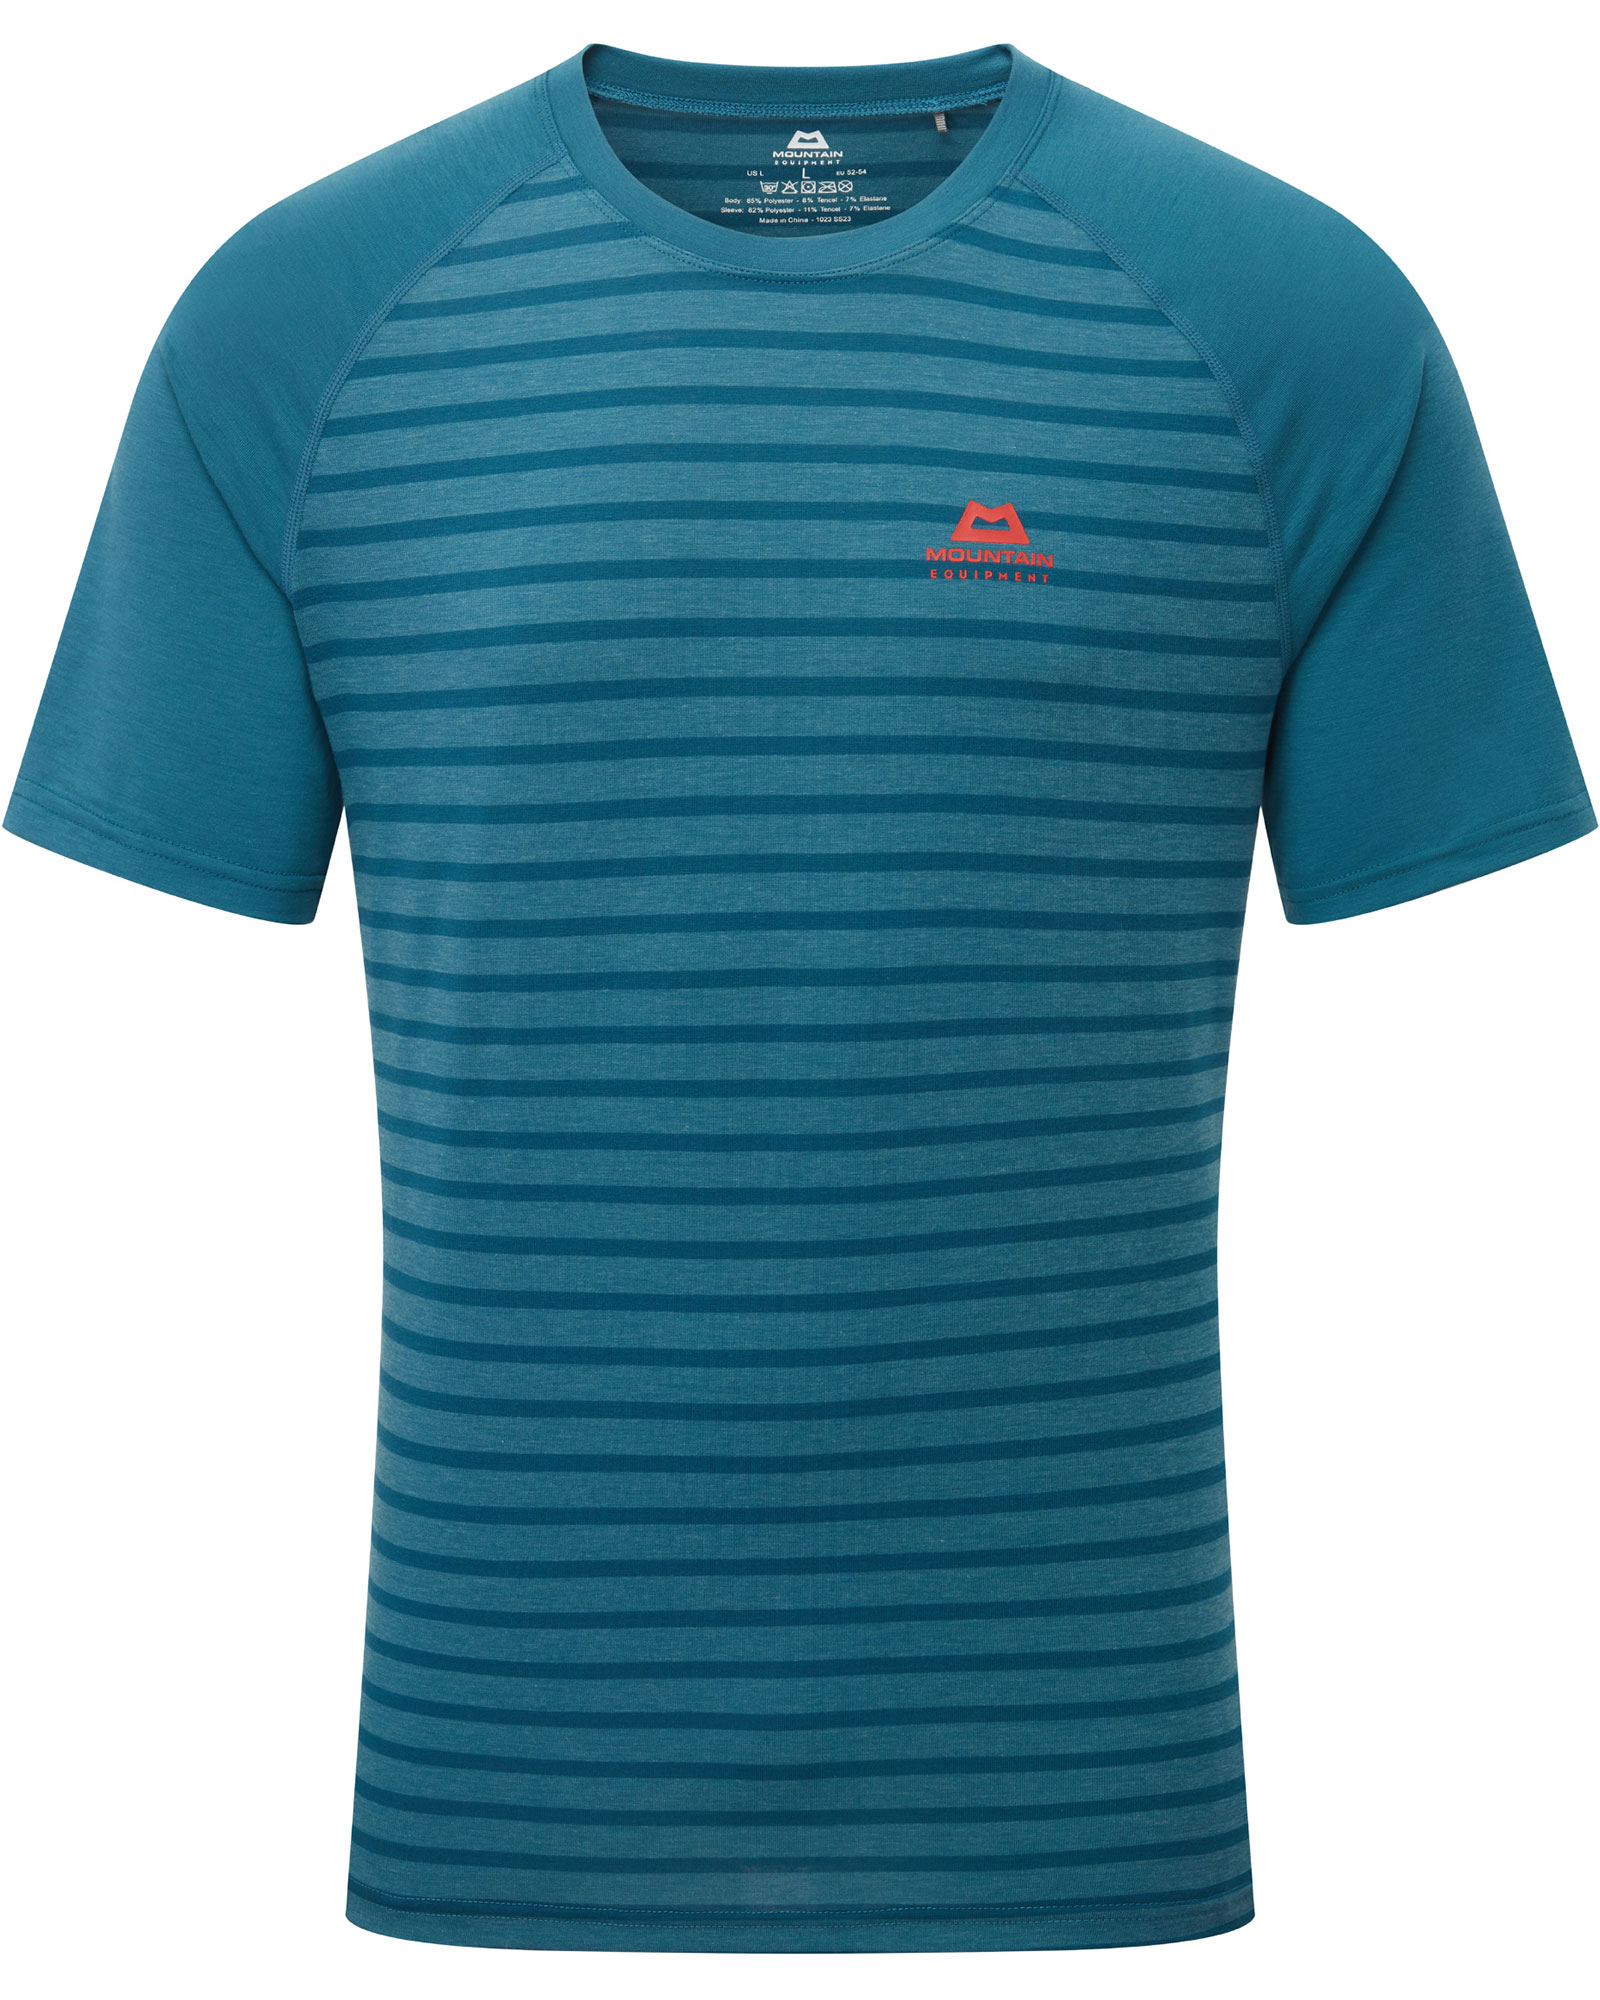 Mountain Equipment Men’s Redline T Shirt - Majolica Blue S